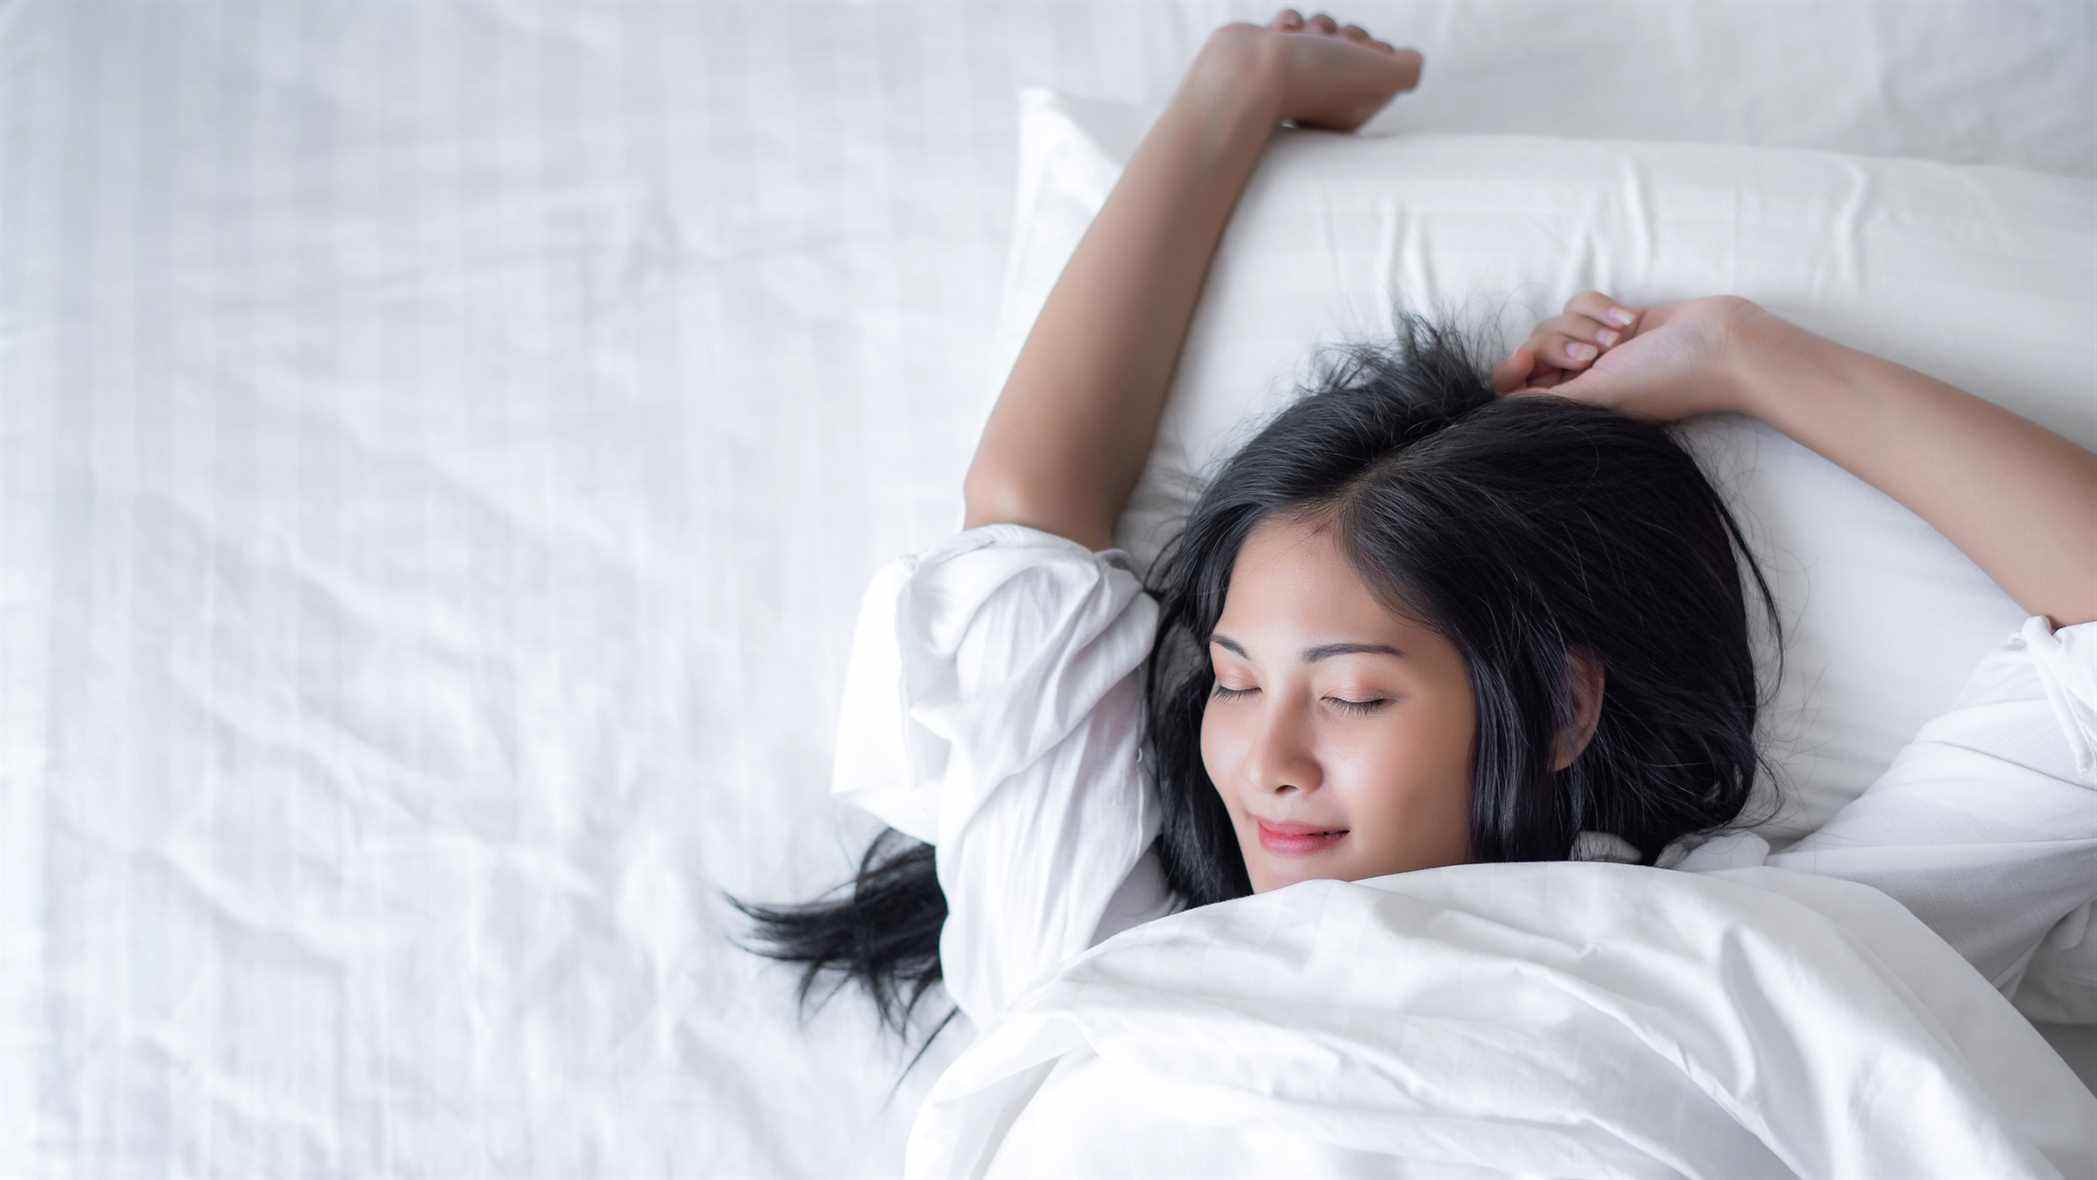 Une femme dort heureuse avec son bras levé sur un confortable matelas blanc